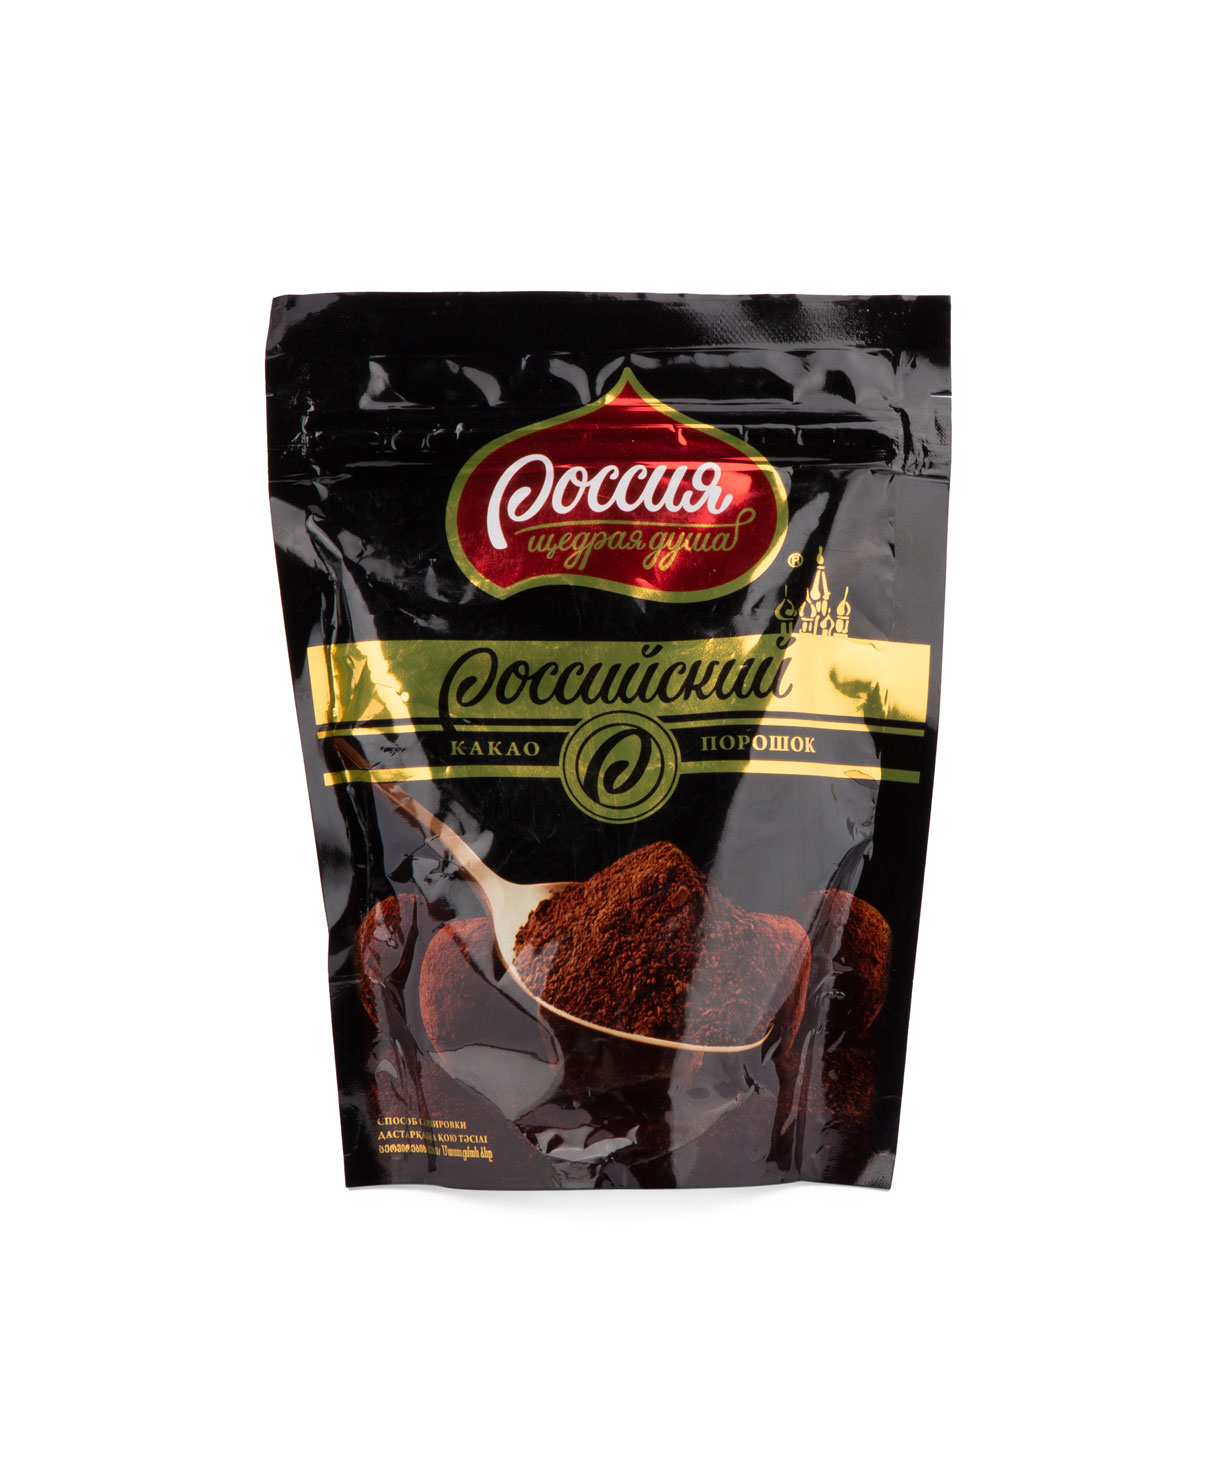 Cocoa `Российский` 100 g